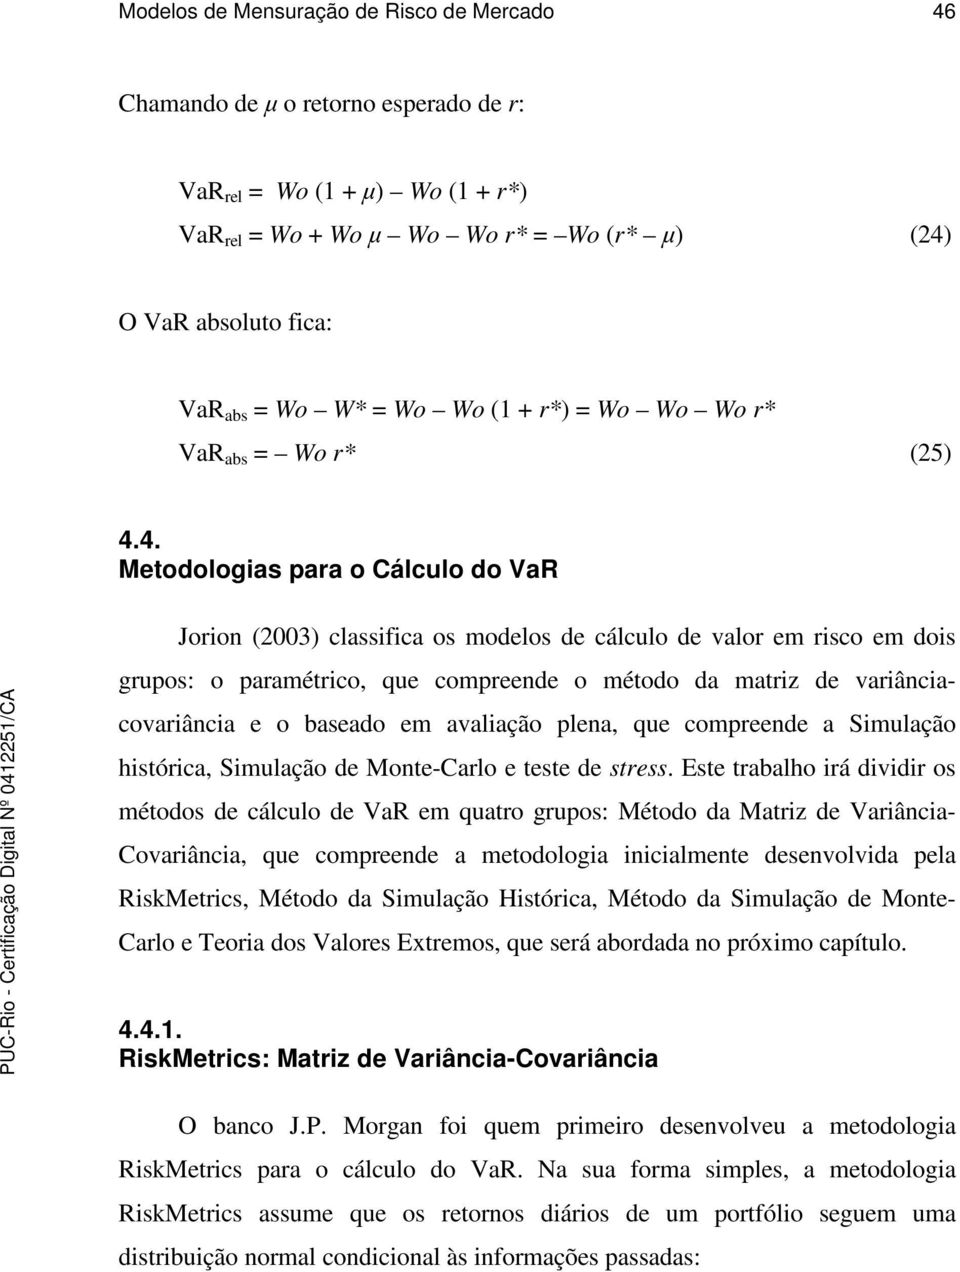 4. Metodologias para o Cálculo do VaR Jorion (003) classifica os modelos de cálculo de valor em risco em dois grupos: o paramétrico, que compreende o método da matriz de variânciacovariância e o